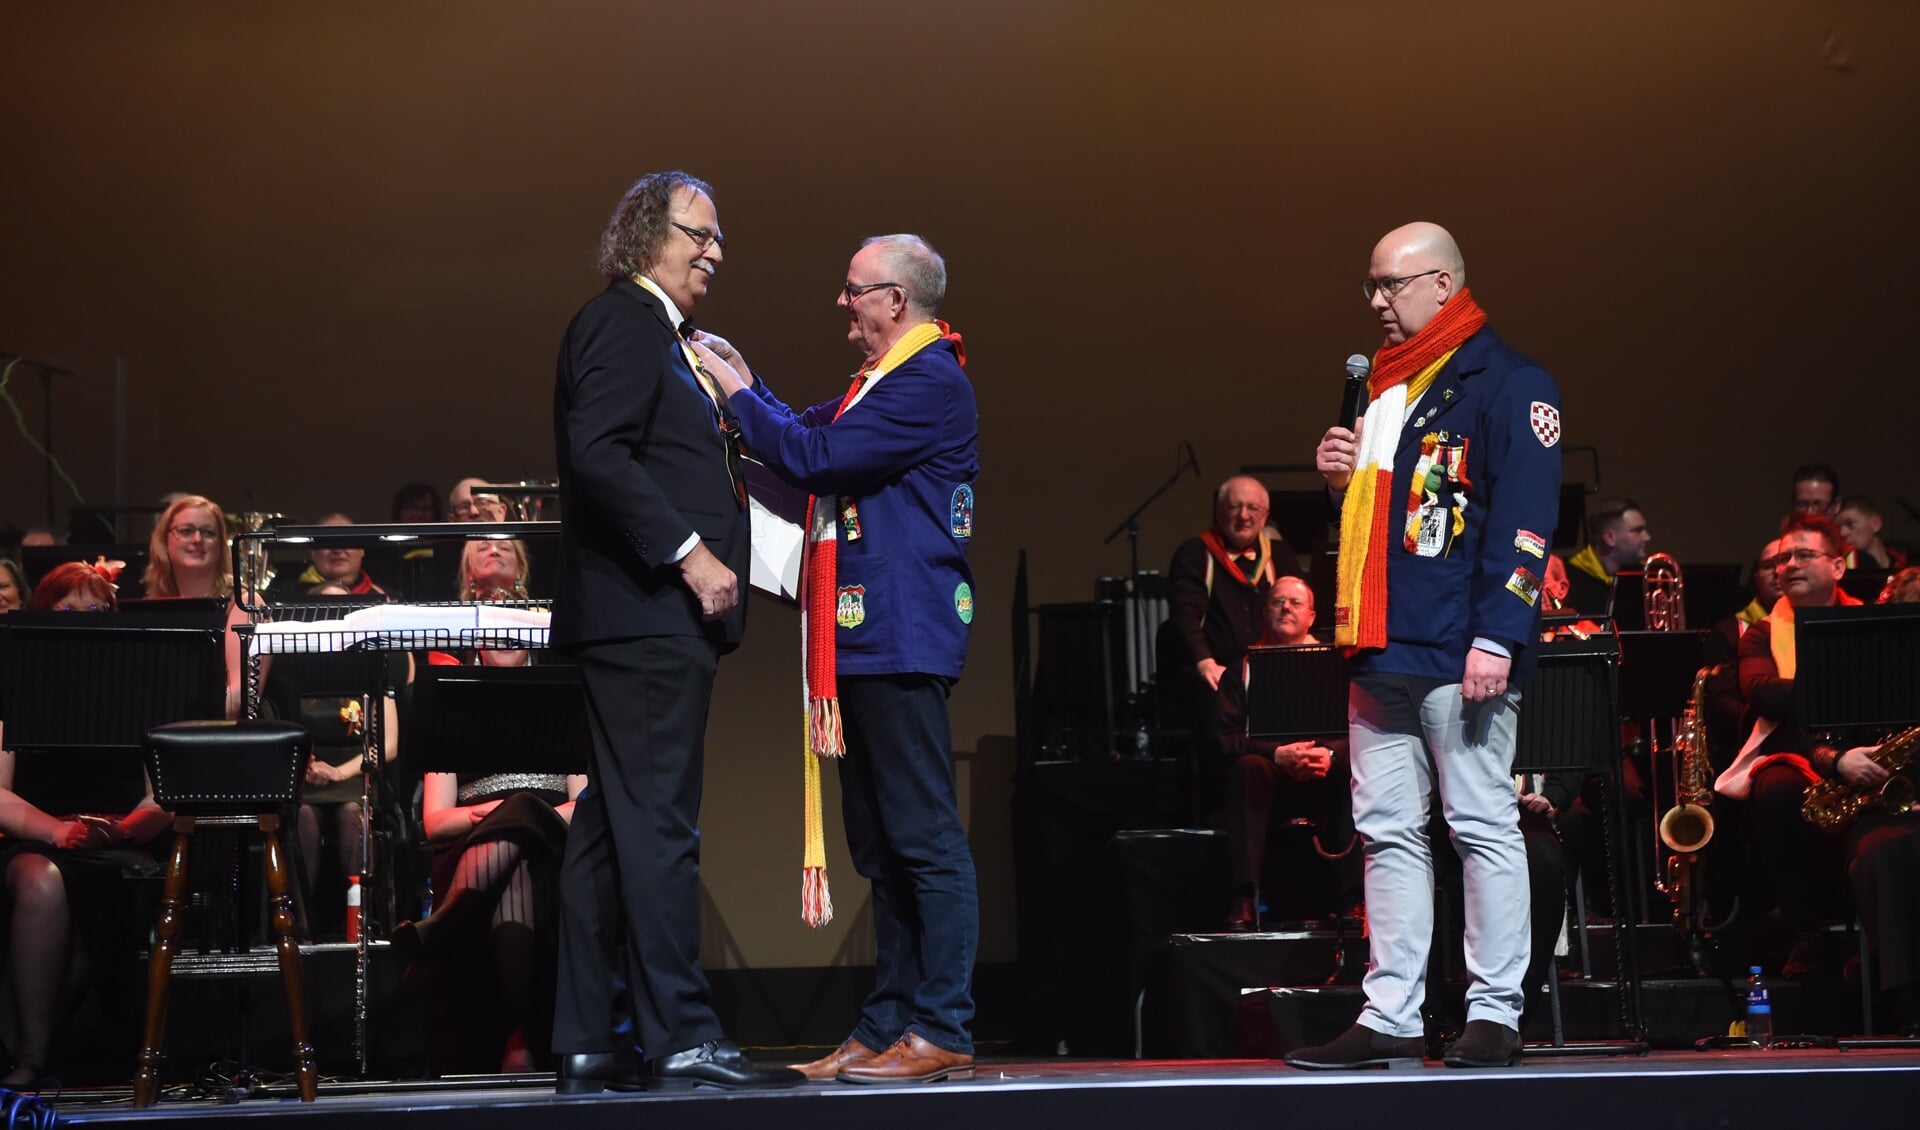 De voorzitter van de Koninklijke Harmonie Harry van der Krabben speldt dirigent Sjef Ipskamp de onderscheiding op.